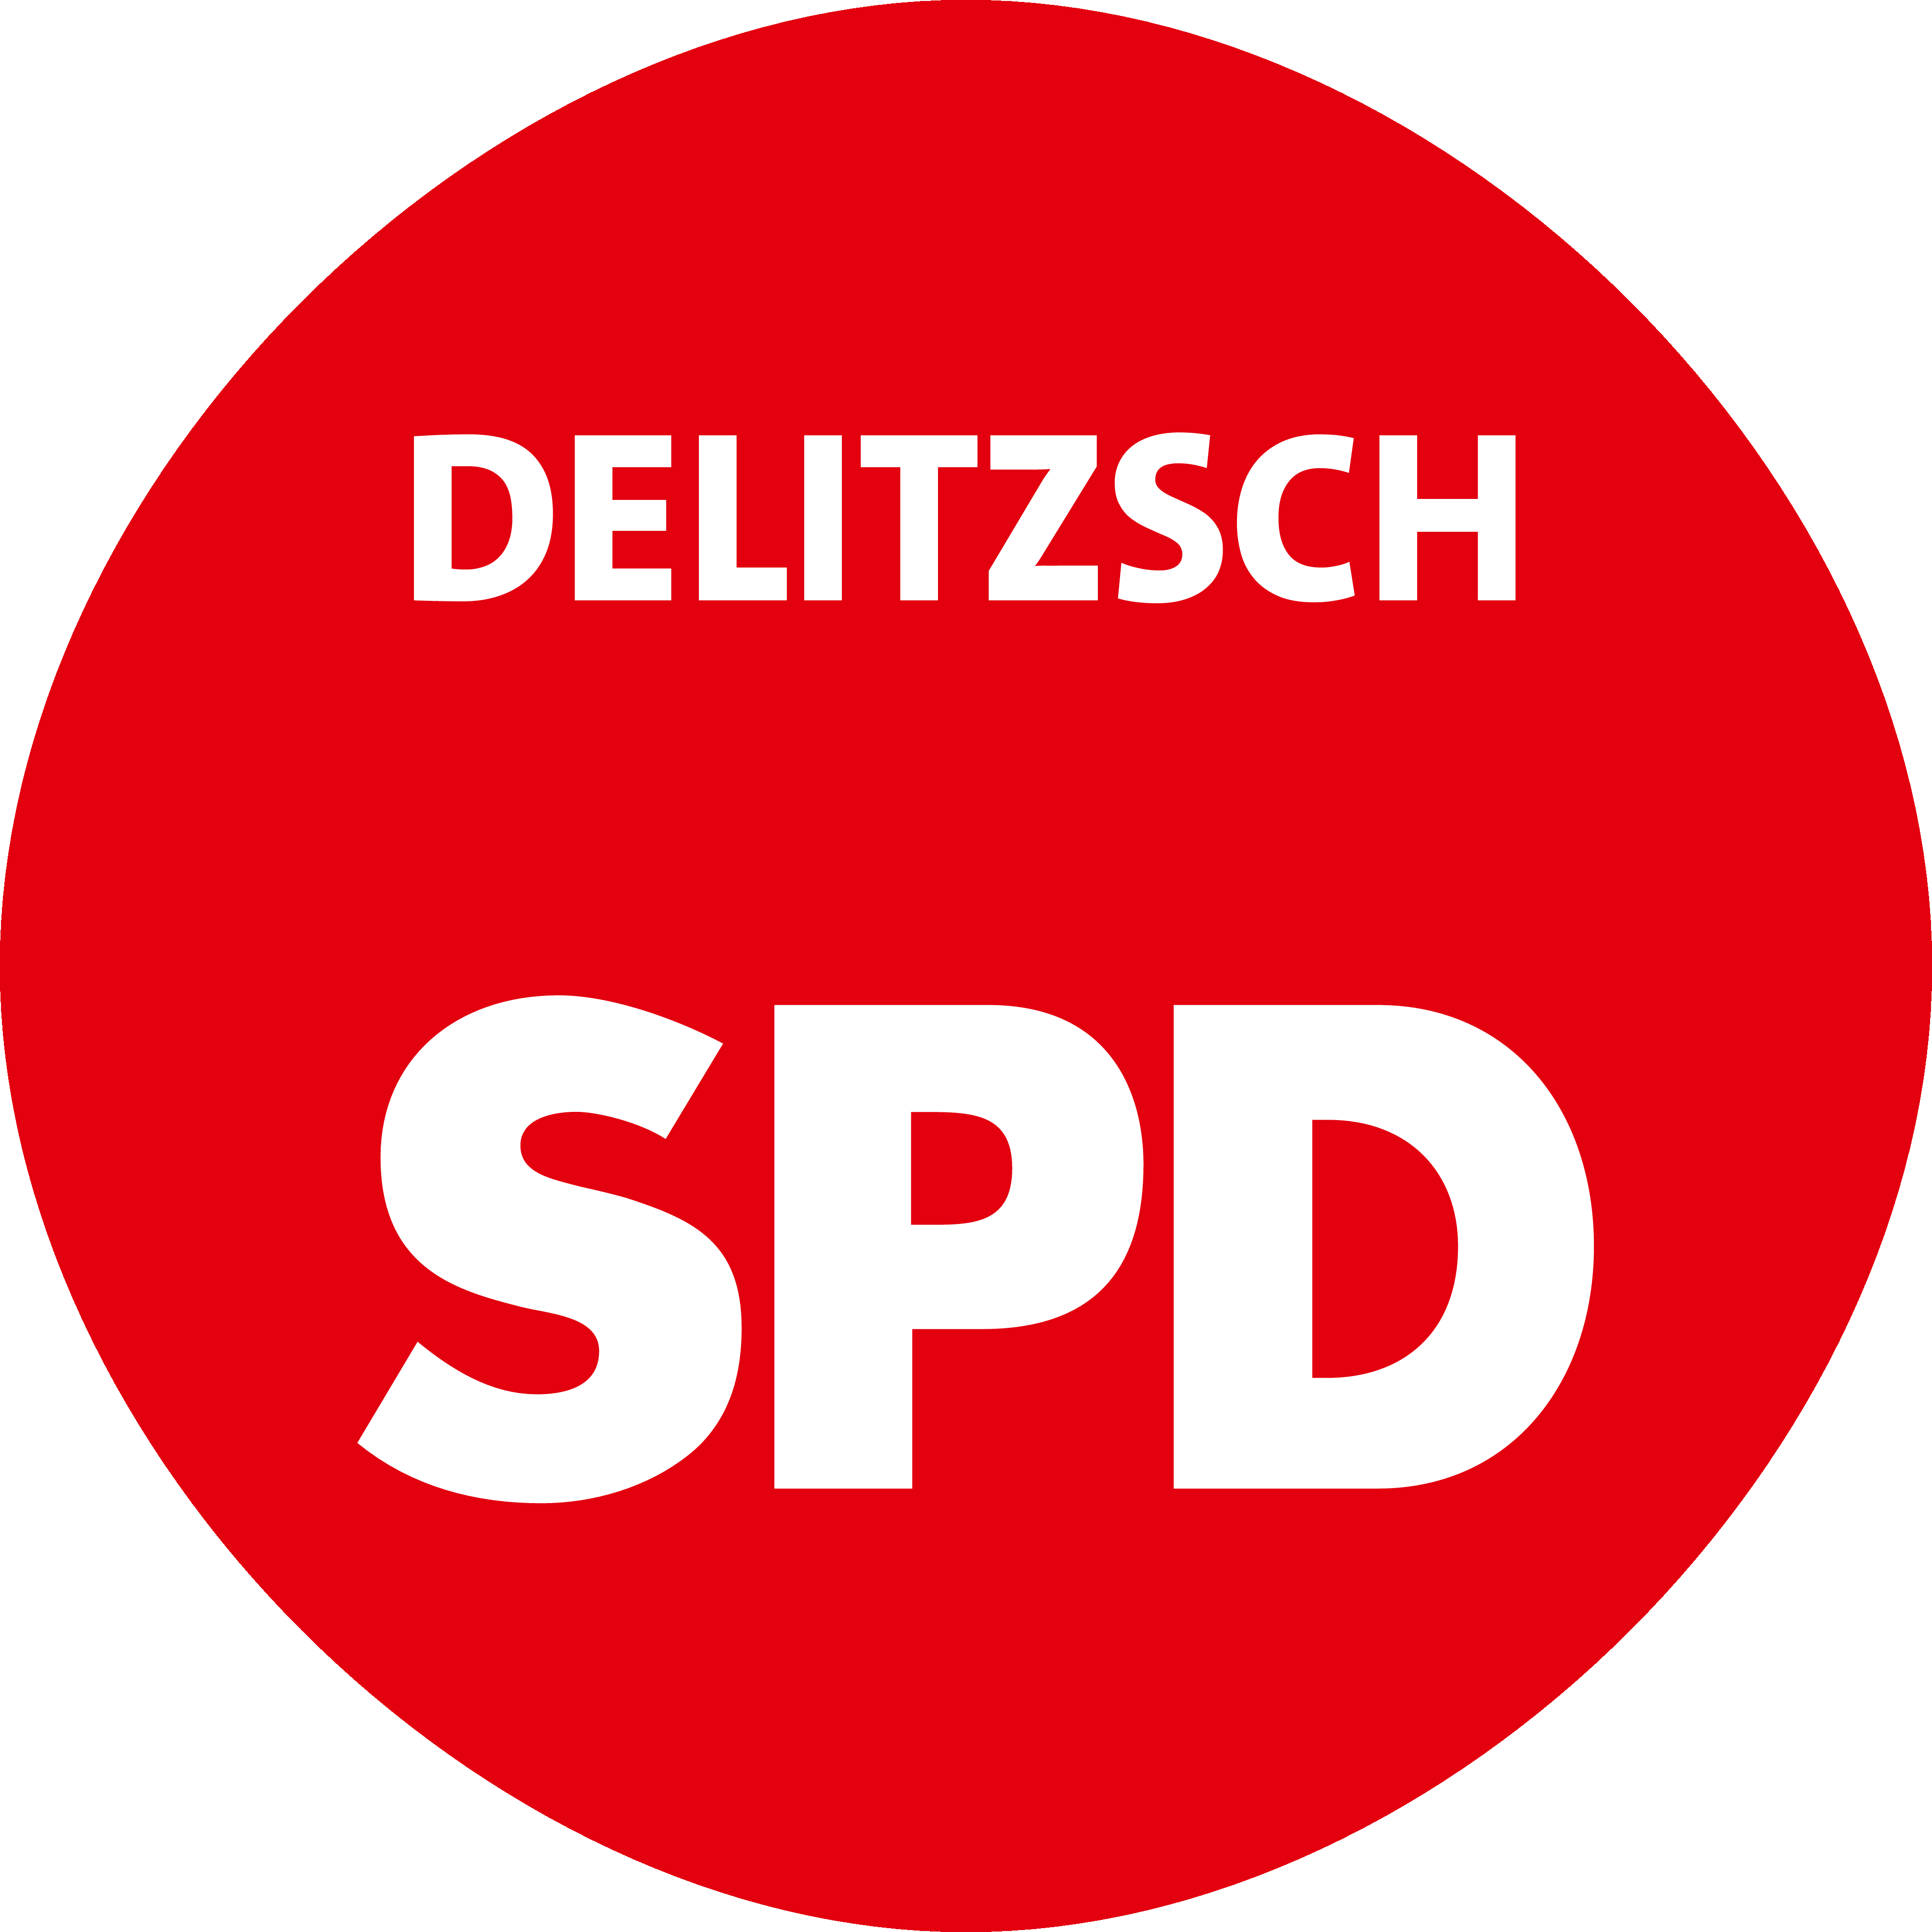 spd_delitzsch